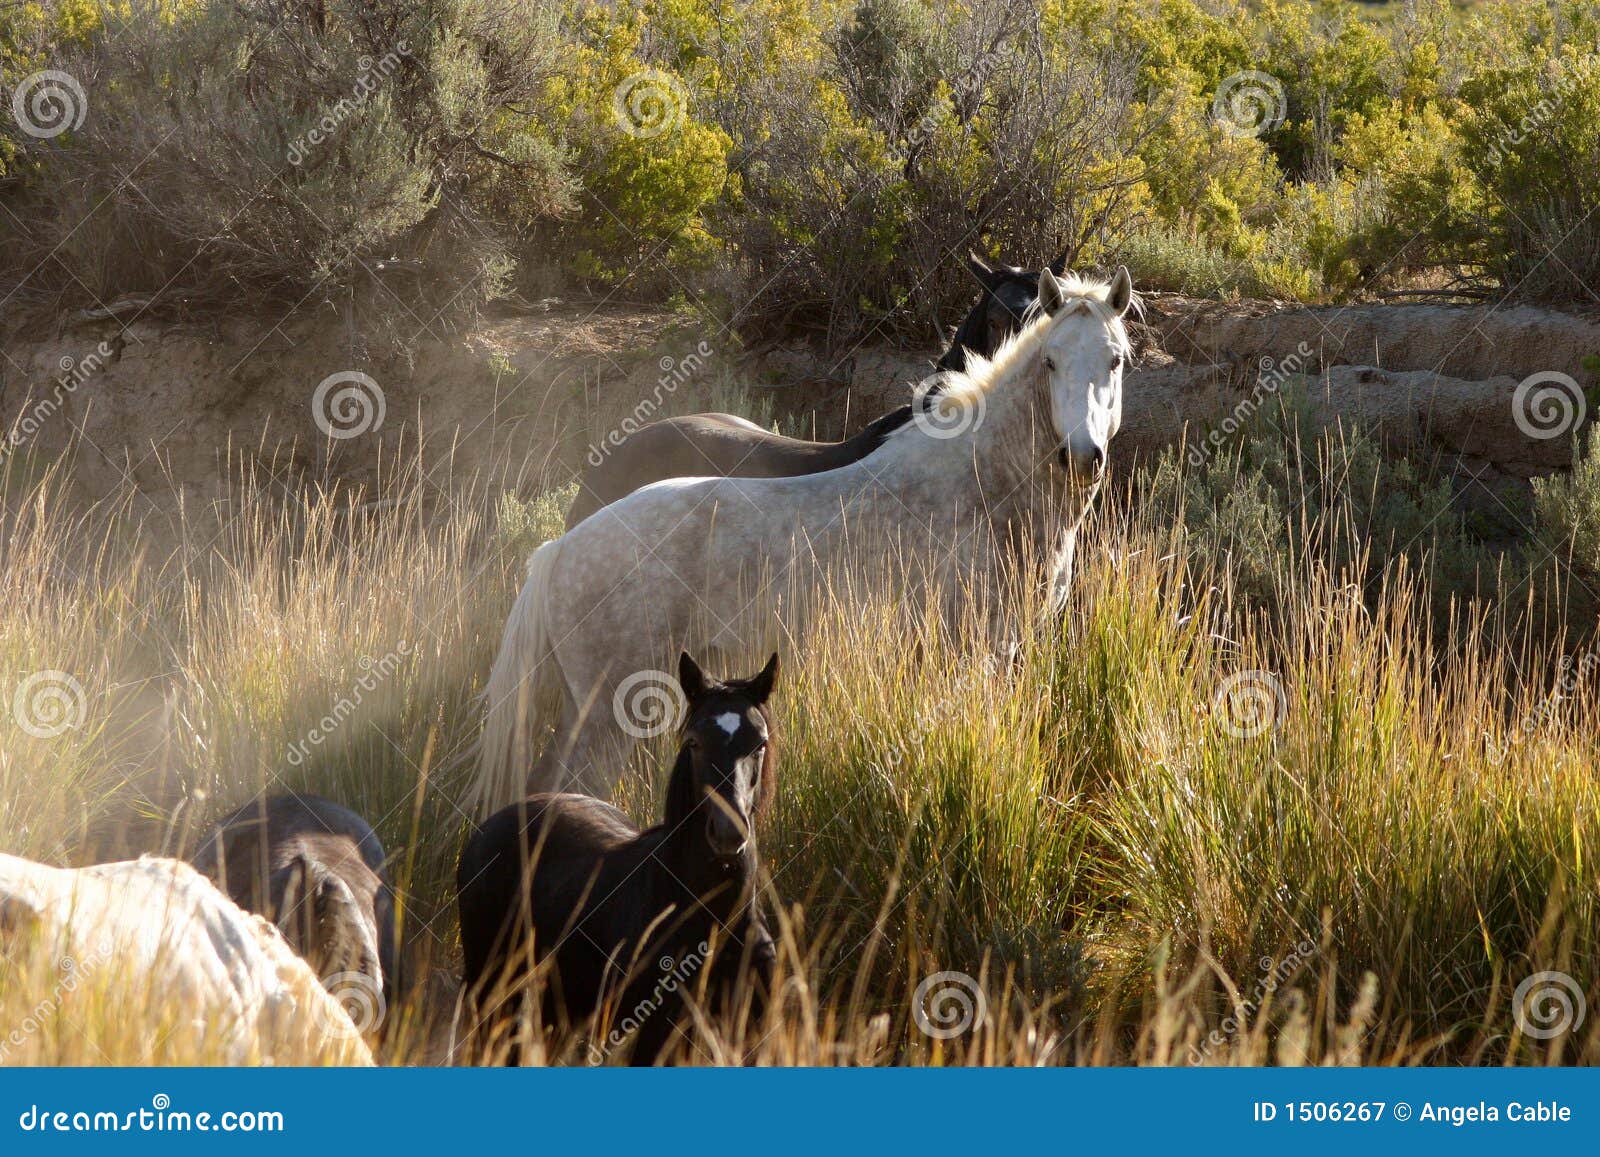 wild horses in arroyo